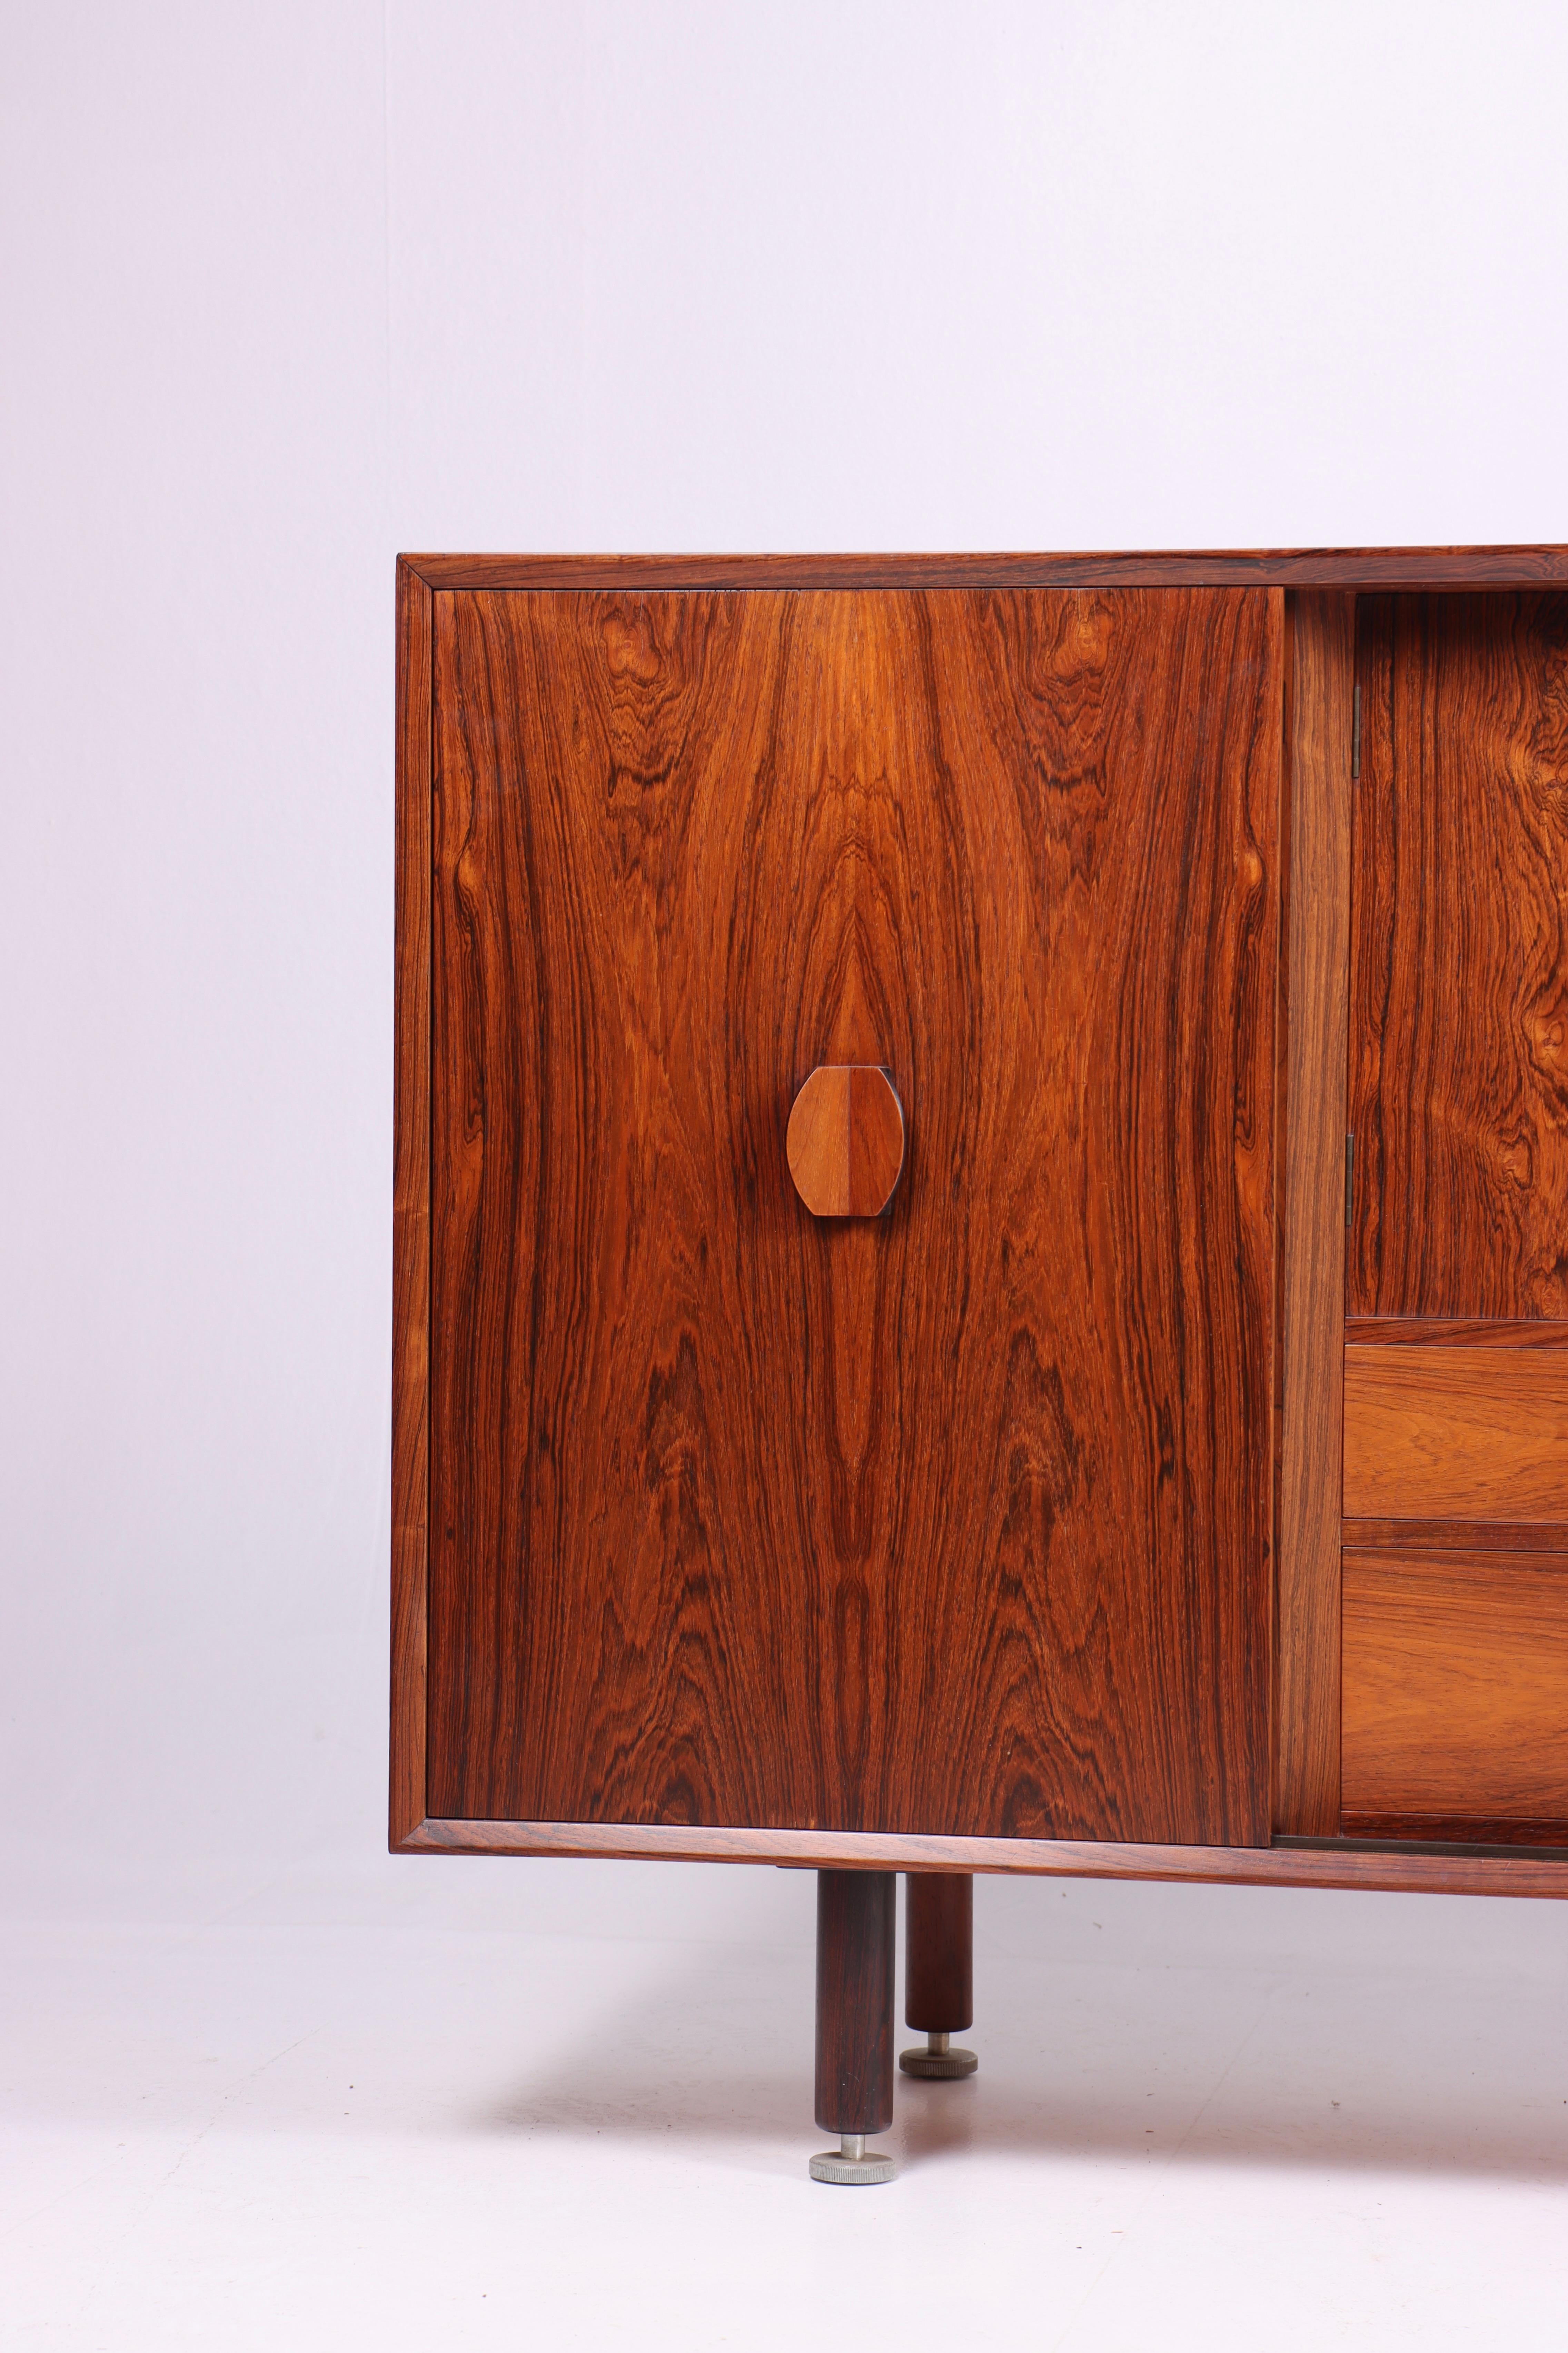 Buffet danois des années 1960, conçu par le célèbre designer de meubles Jens Risom.

Le buffet se caractérise par son magnifique bois de rose, qui apporte chaleur et caractère à tout espace. Les veinures naturelles et les couleurs variées du bois